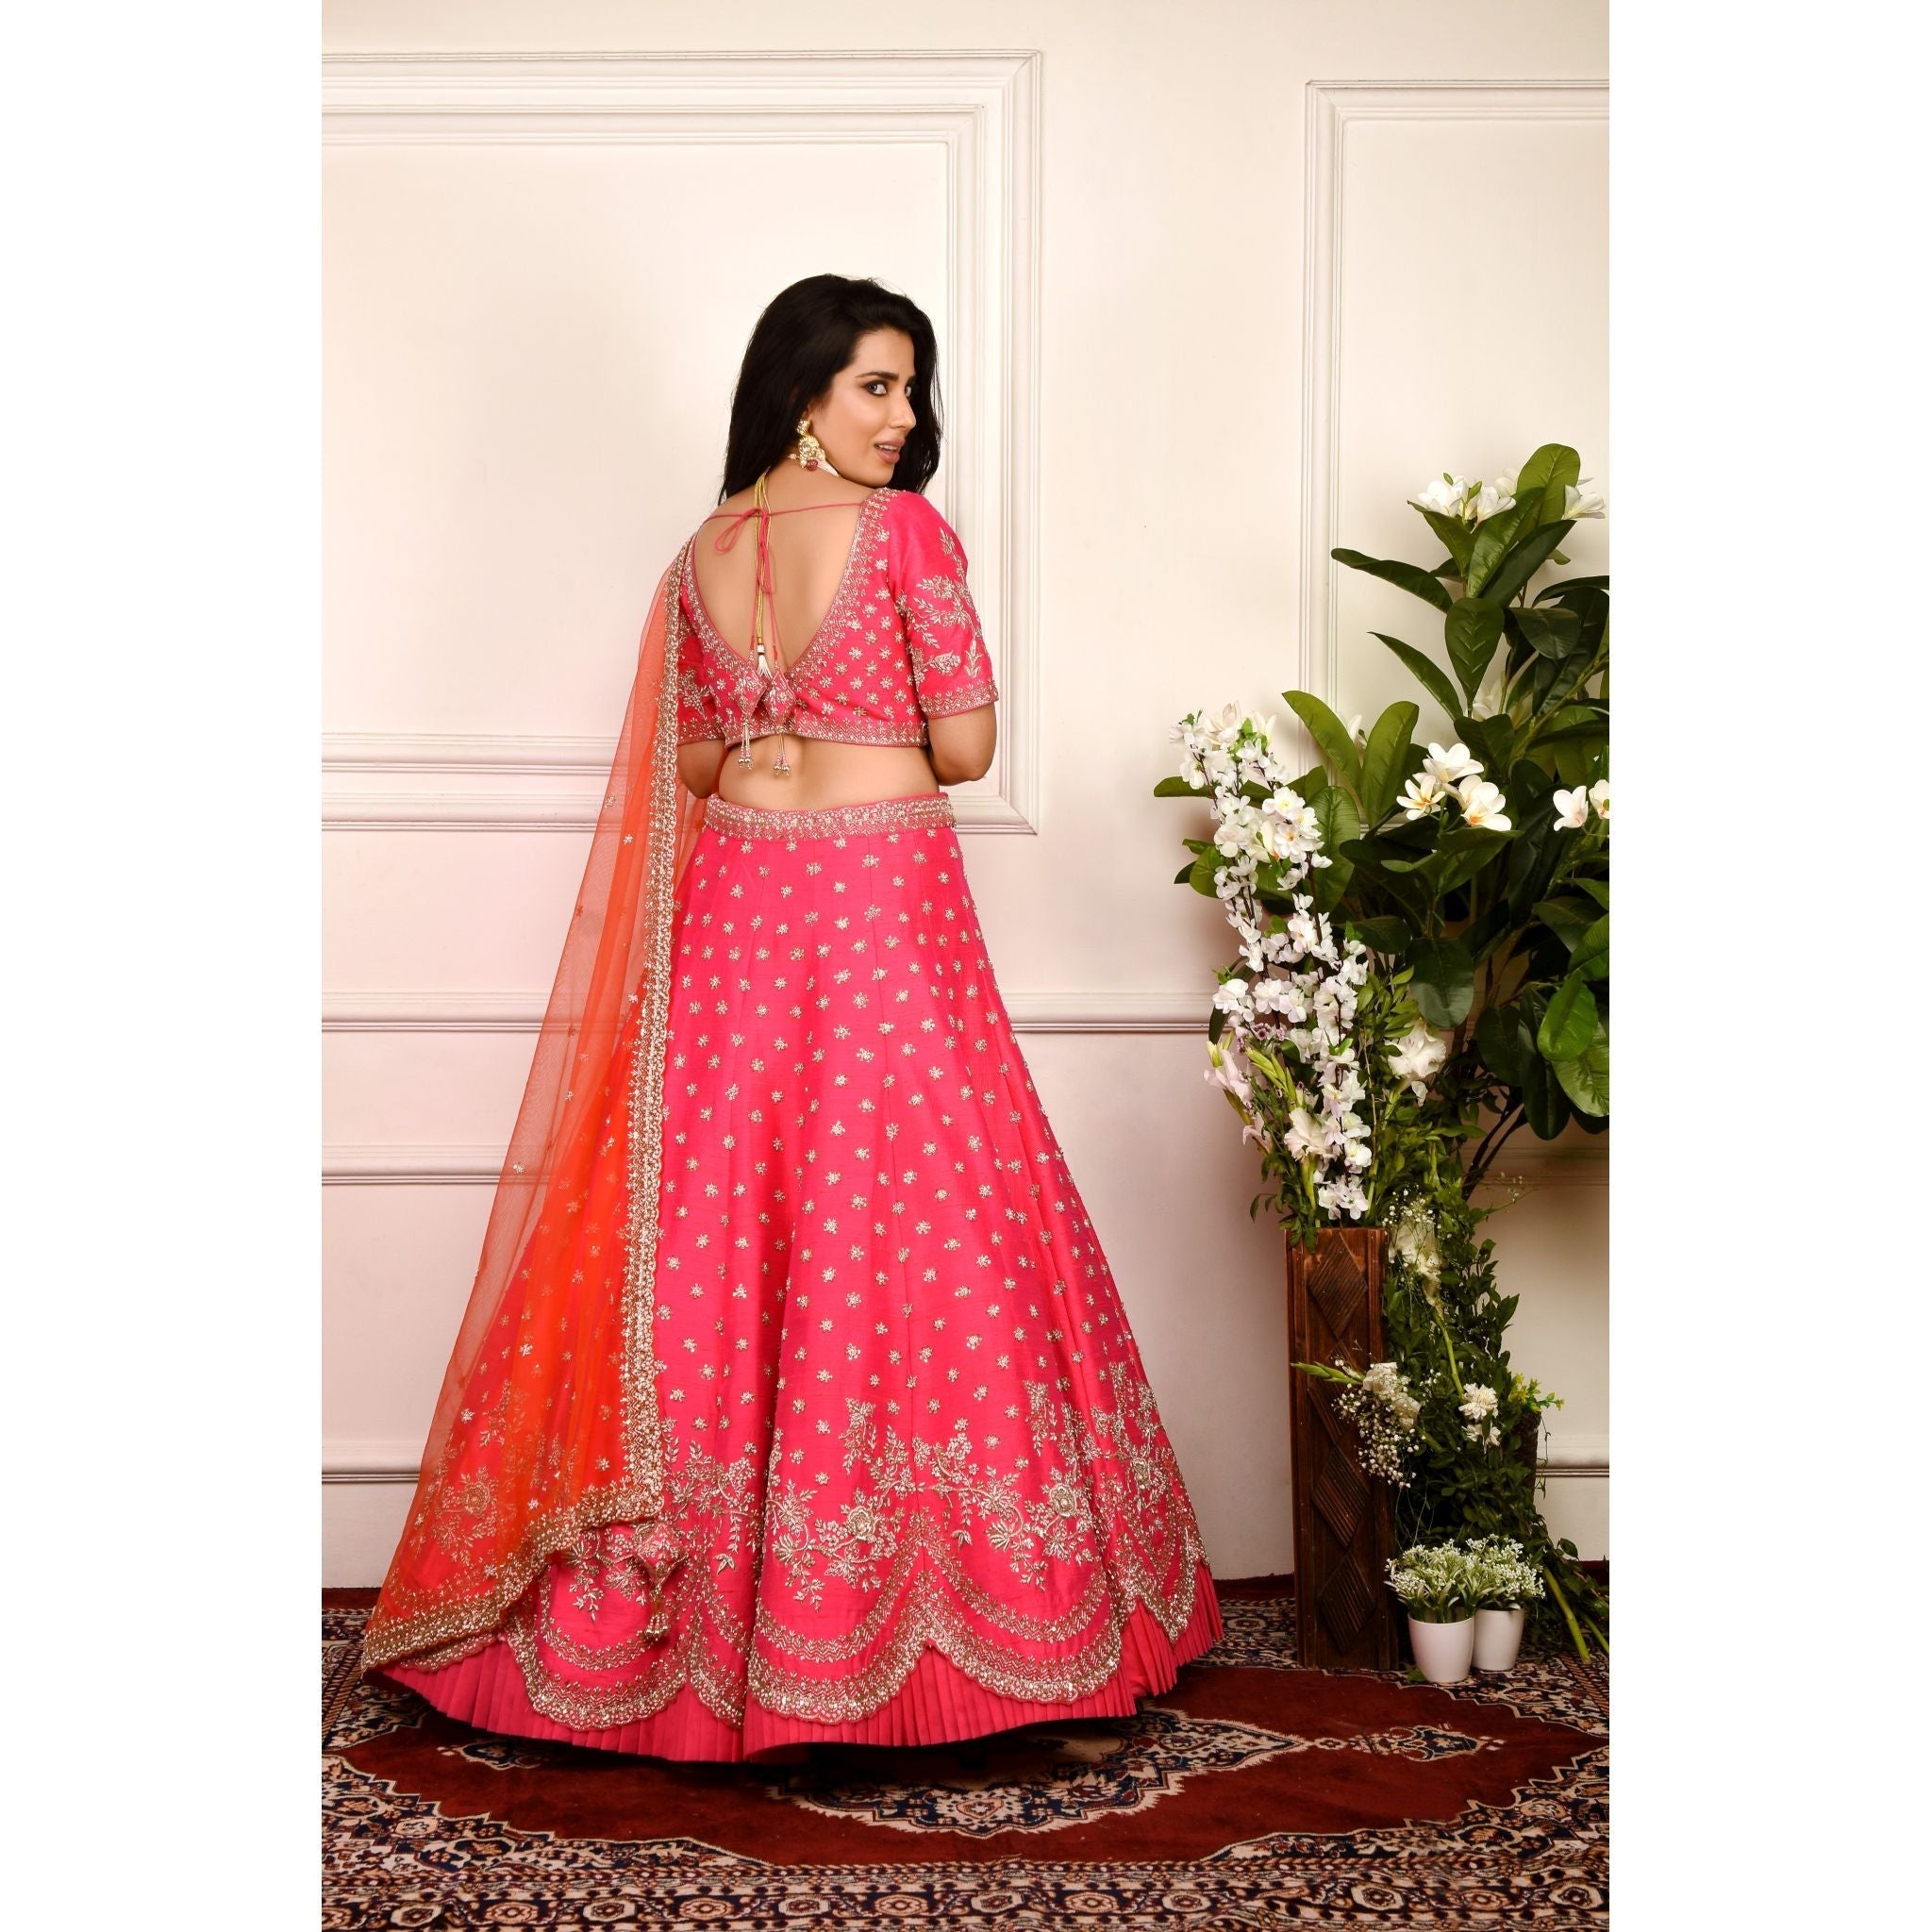 Hot Pink And Orange Zardozi Lehenga Set - Indian Designer Bridal Wedding Outfit